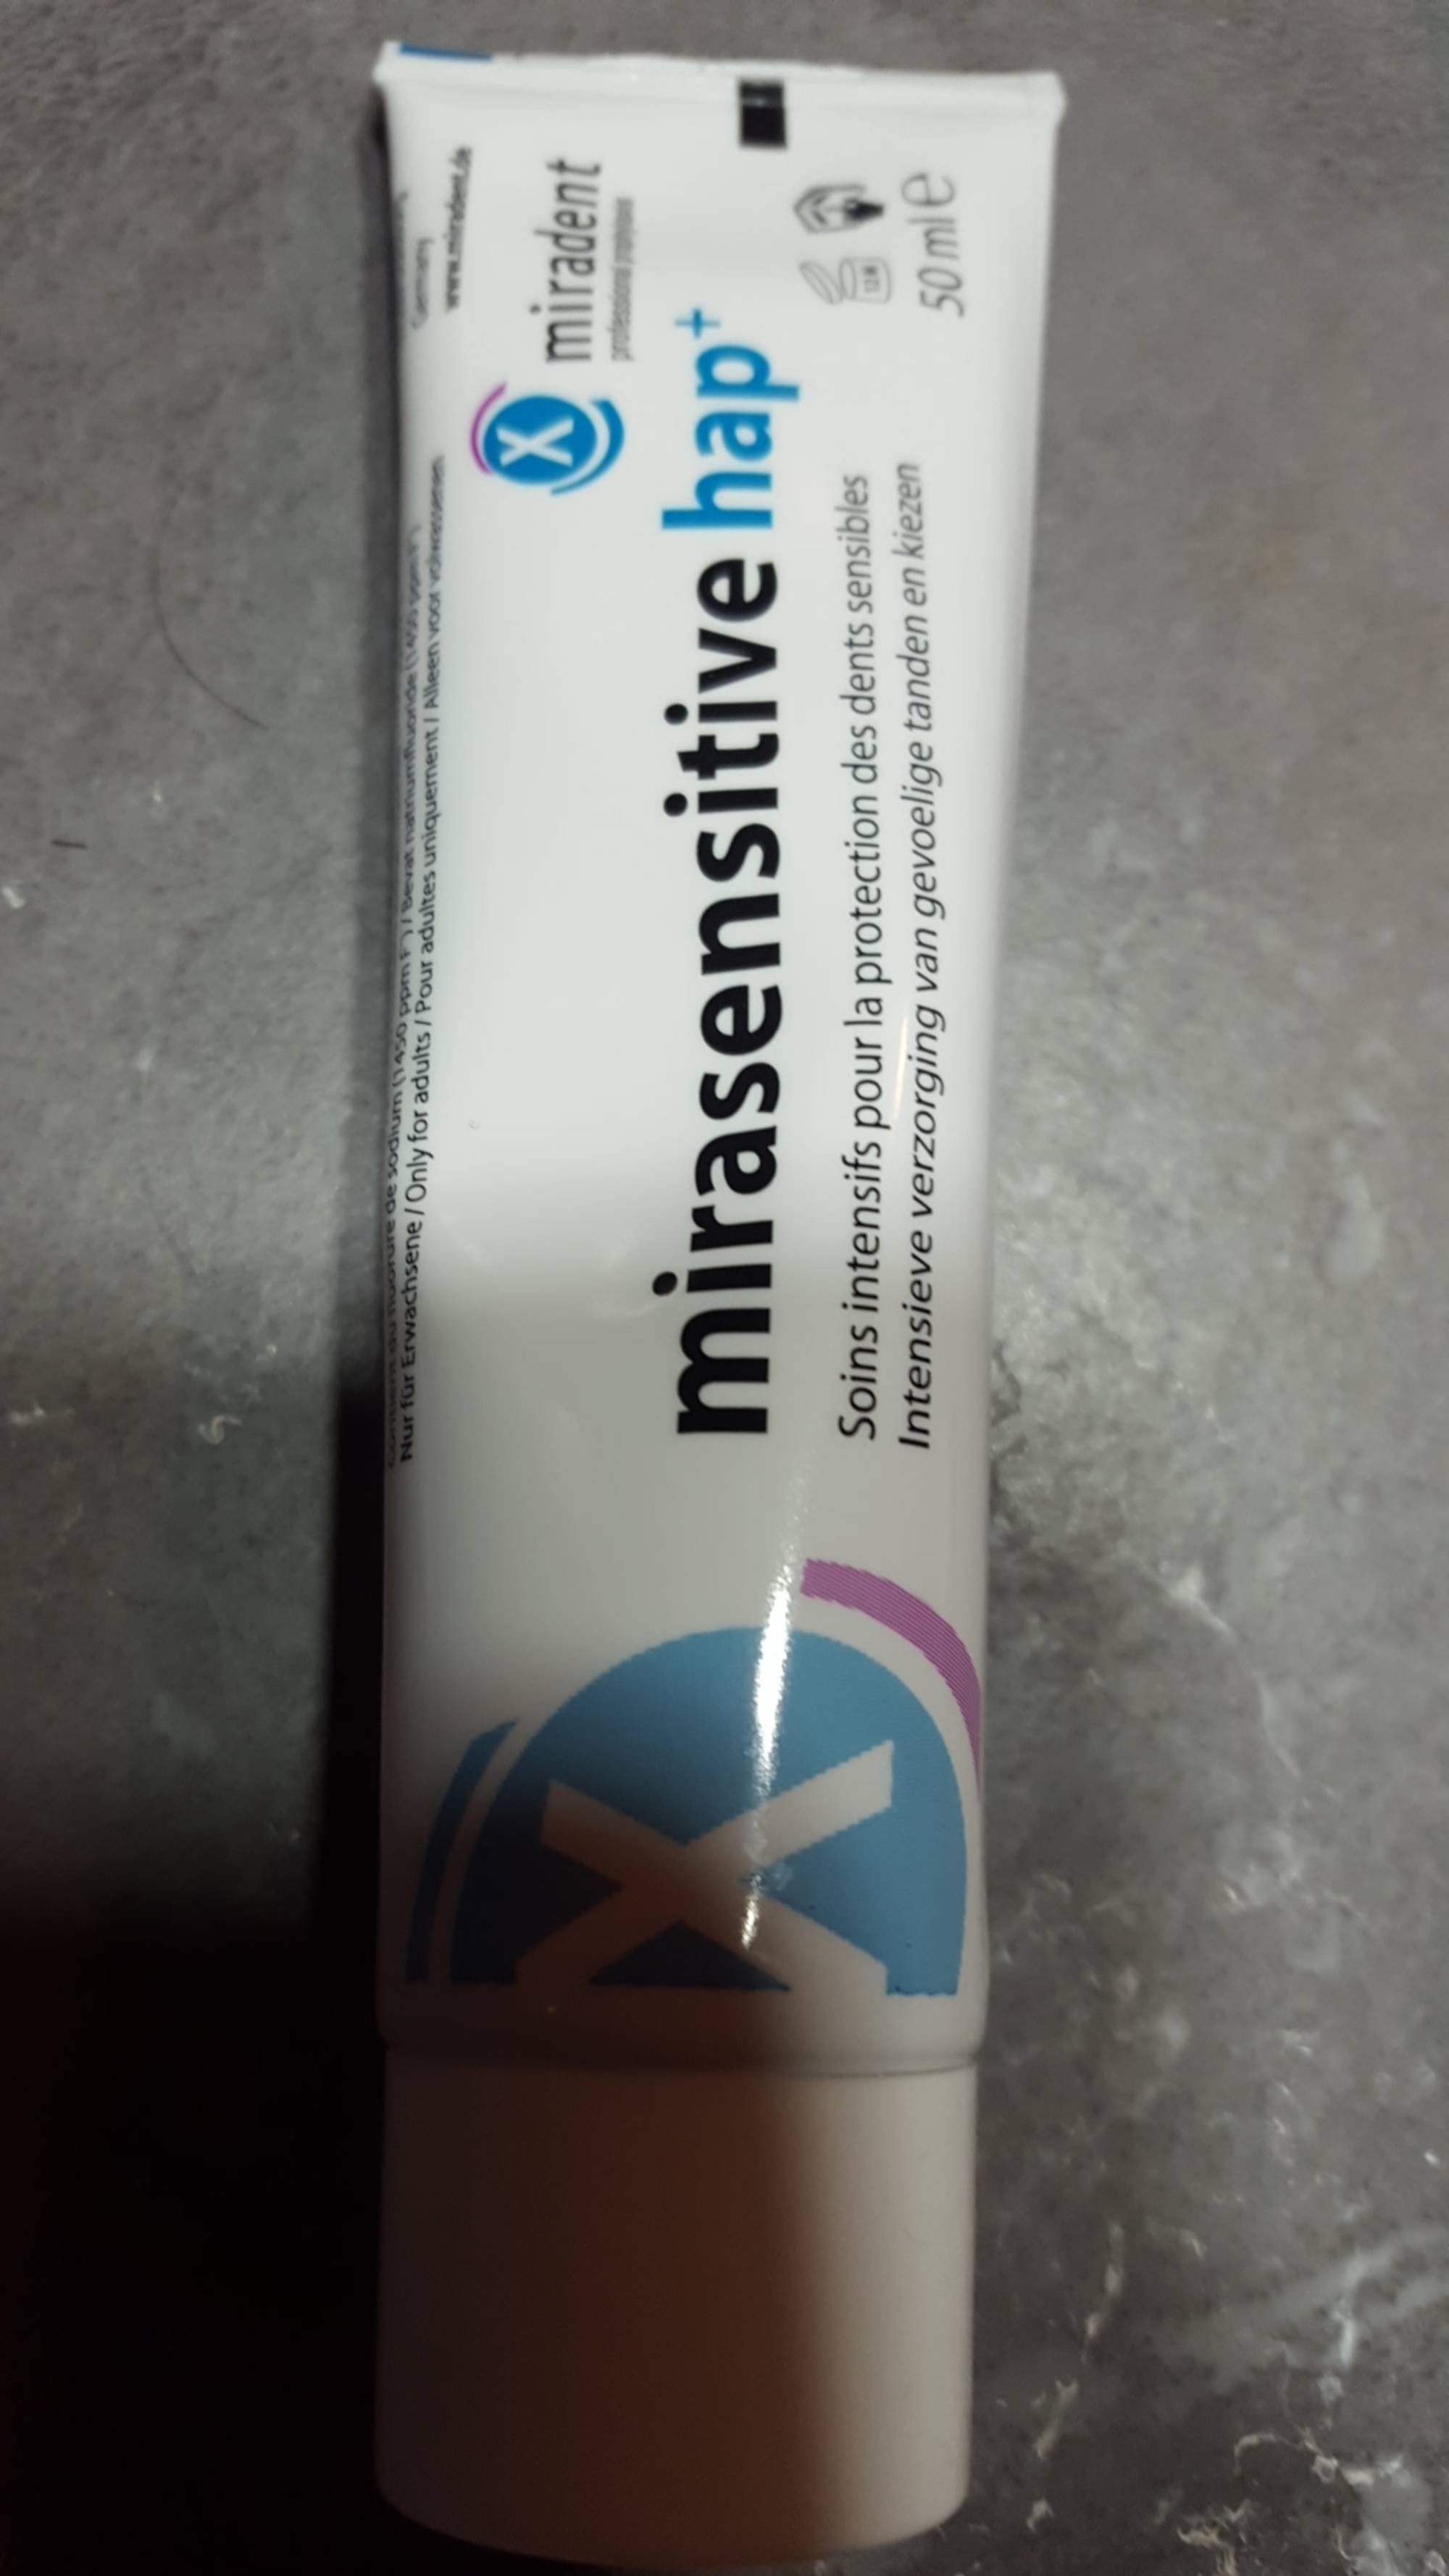 MIRADENT - Mirasensitive hap+ - Soins intensifs pour la protection des dents sensibles